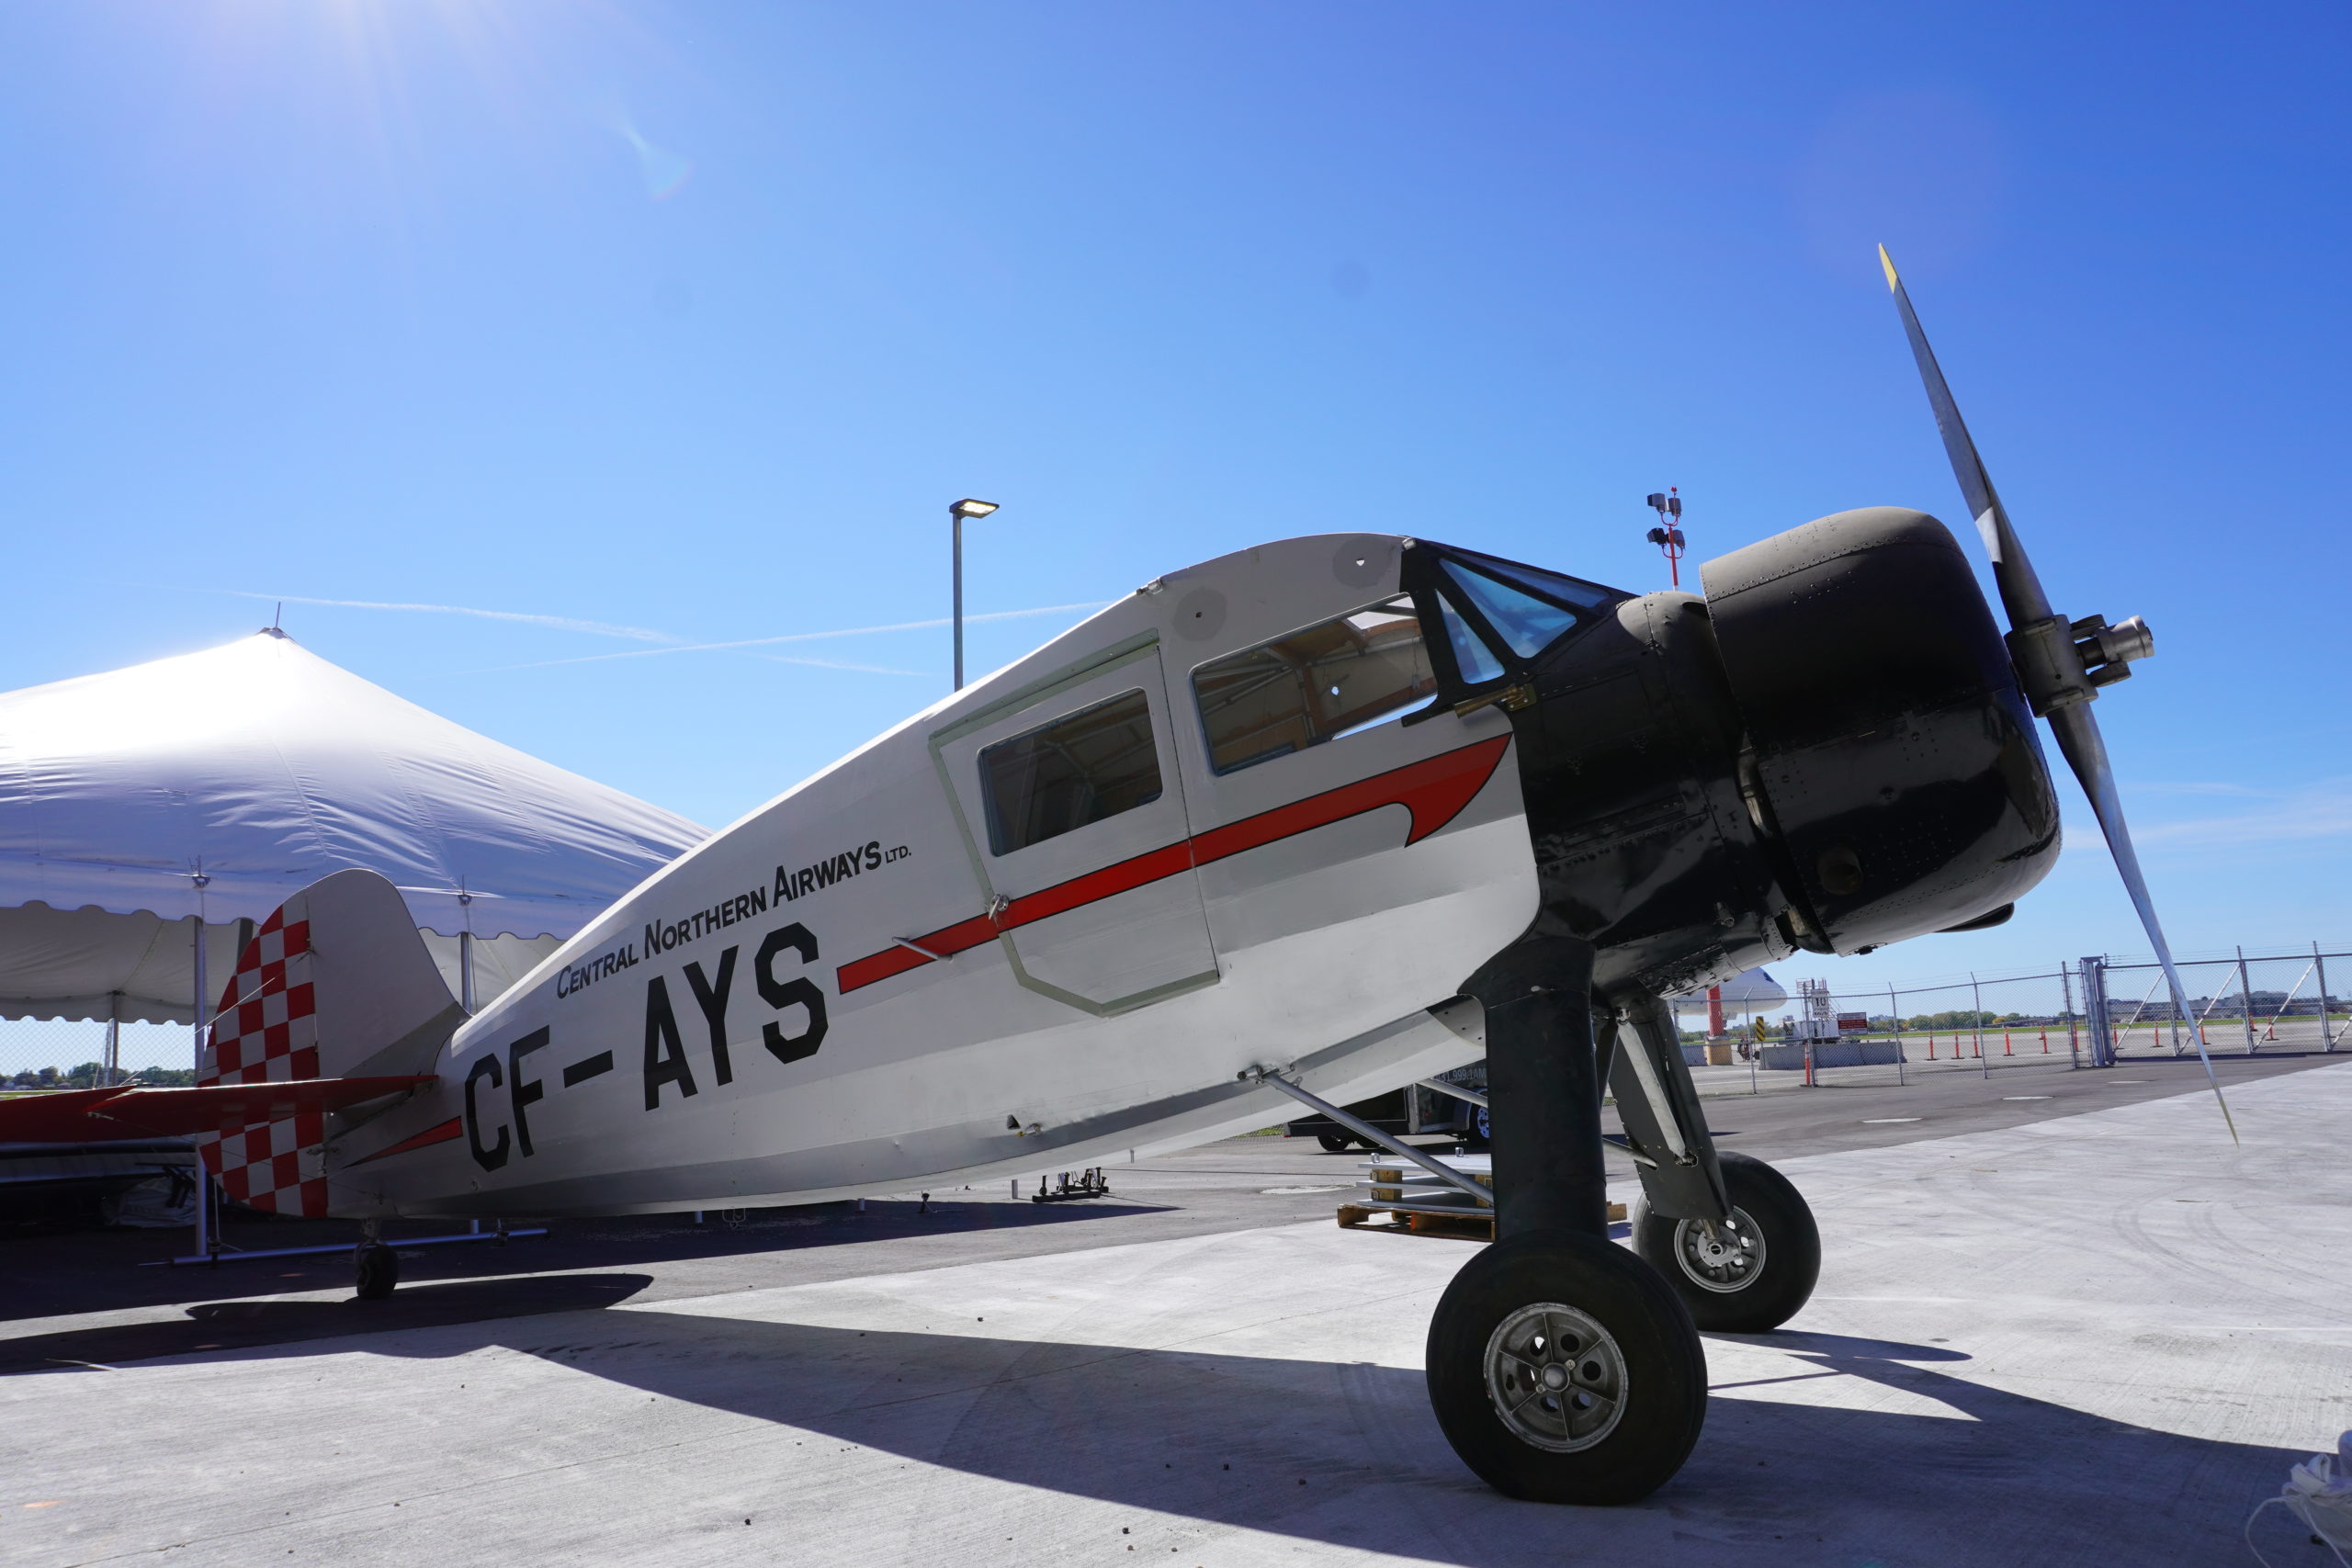 Waco Sesquiplane CF-AYS